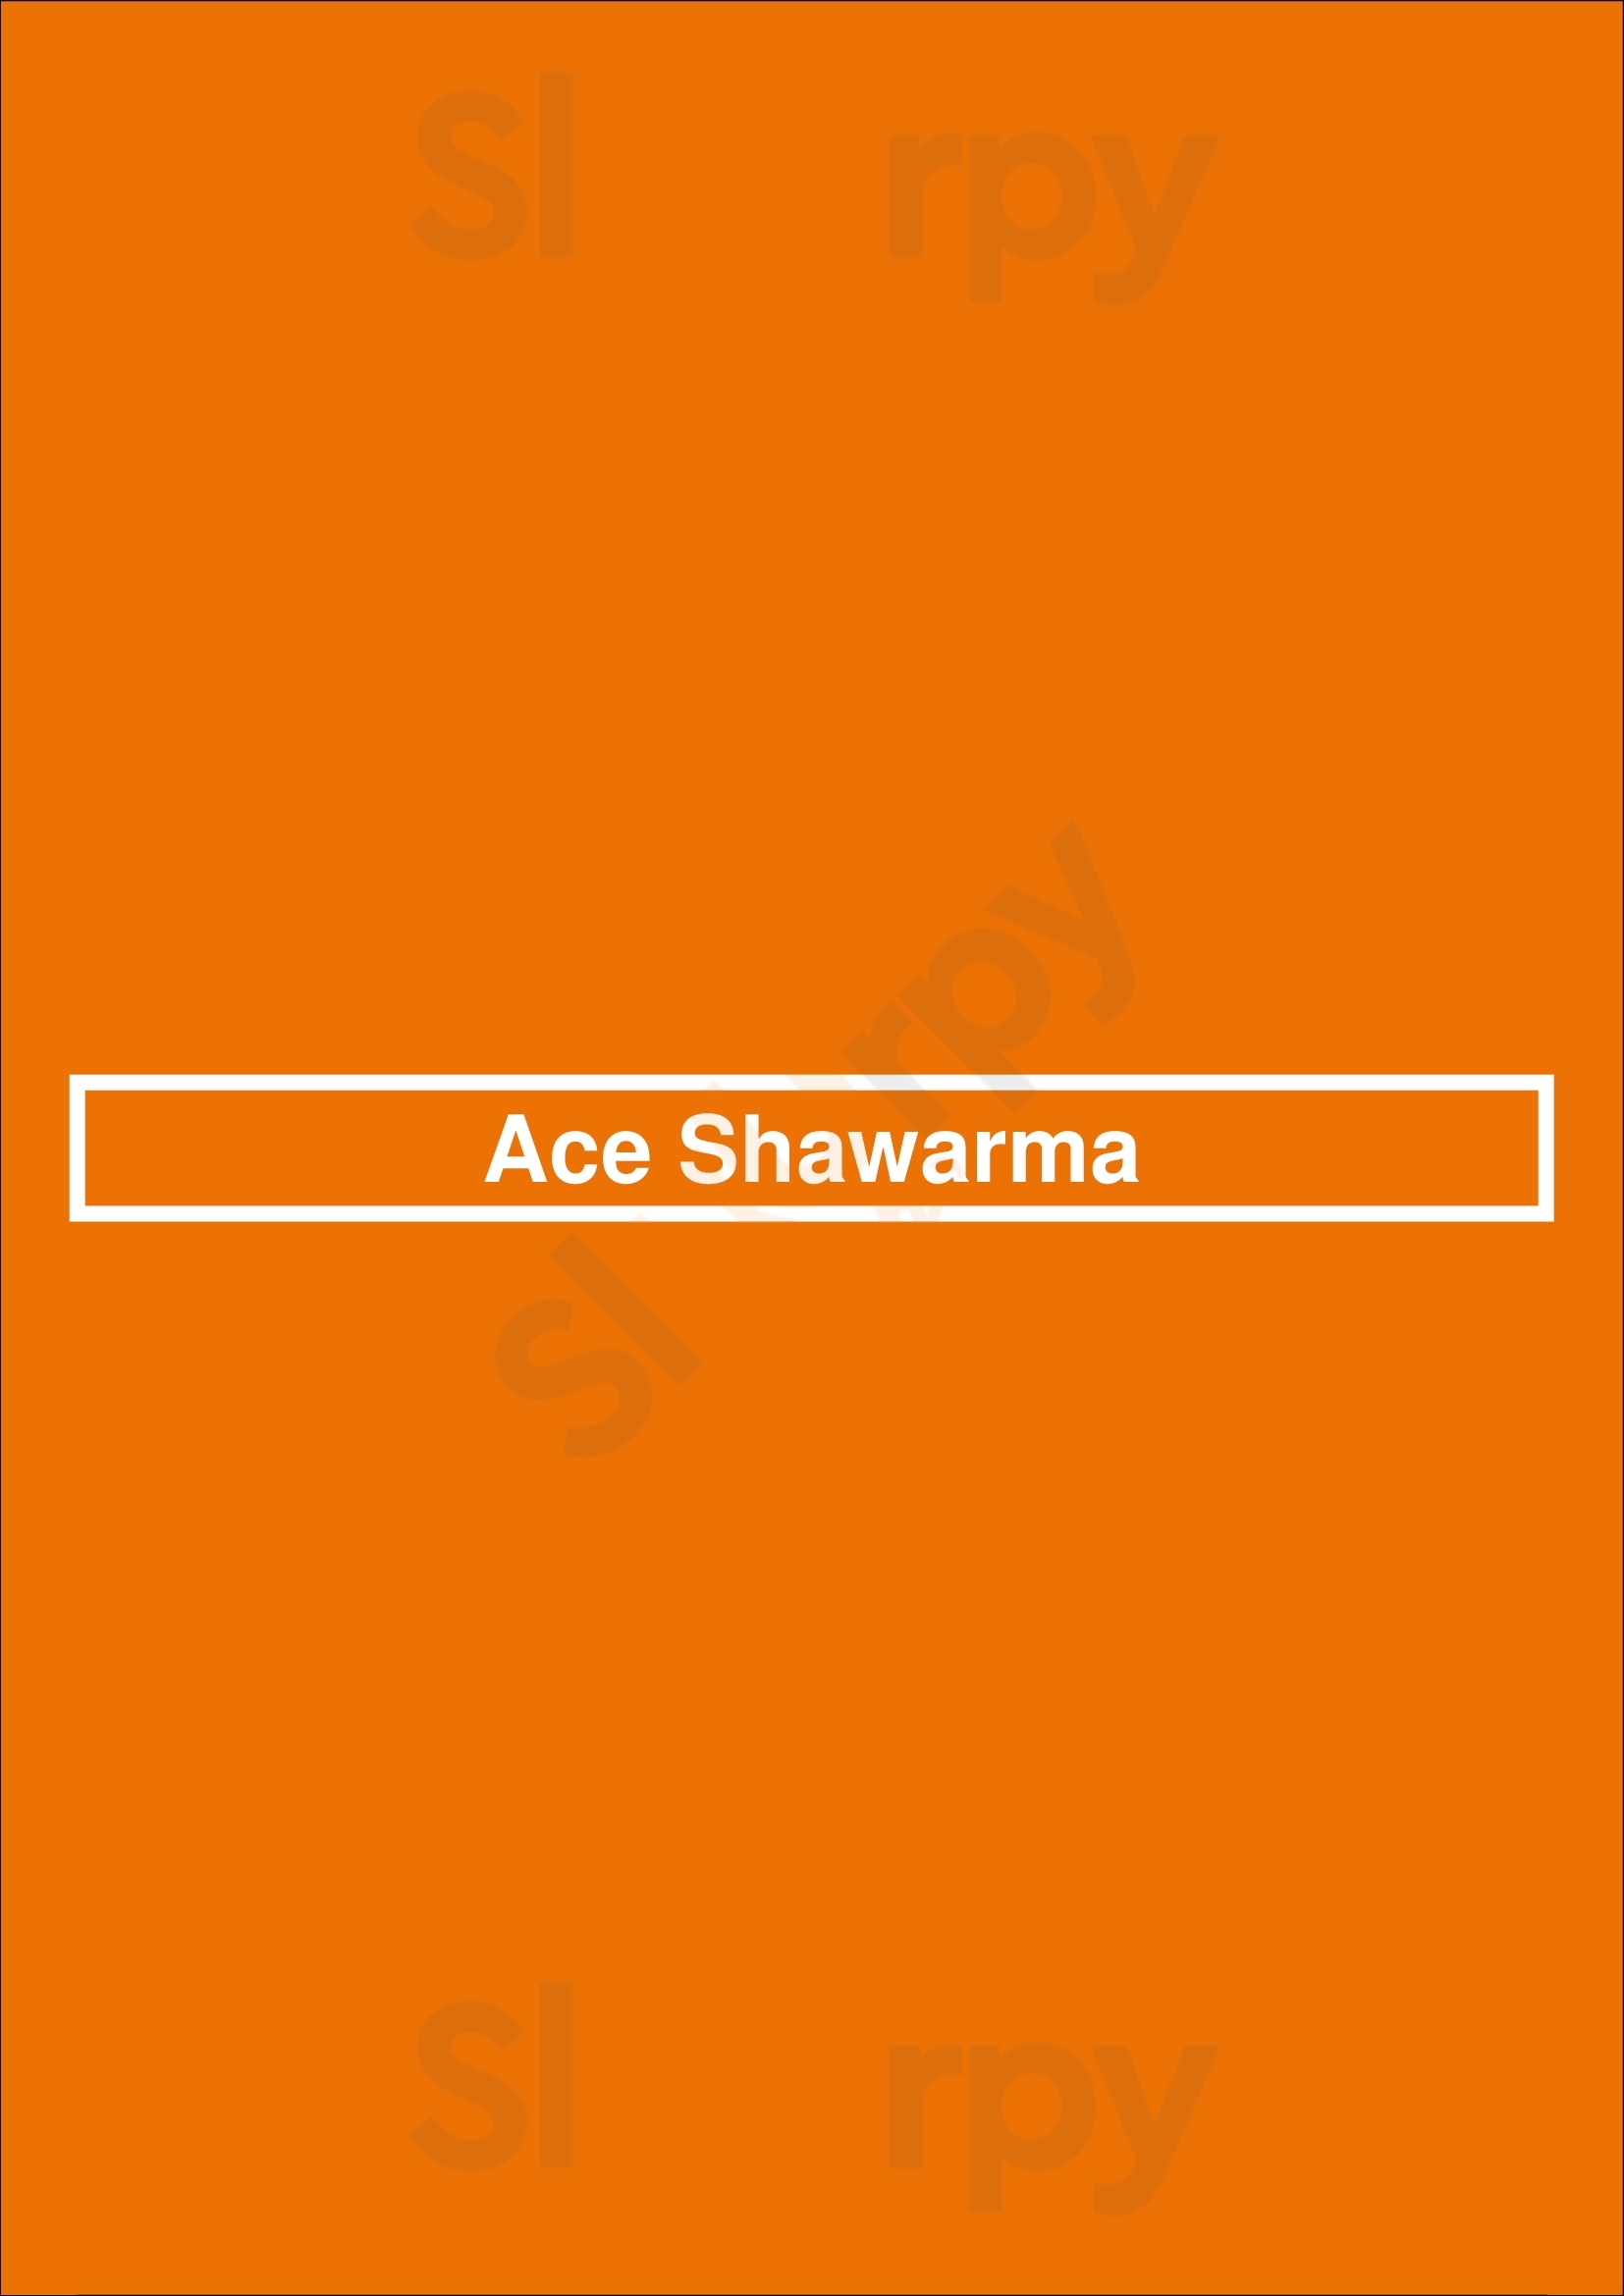 Ace Shawarma Kitchener Menu - 1